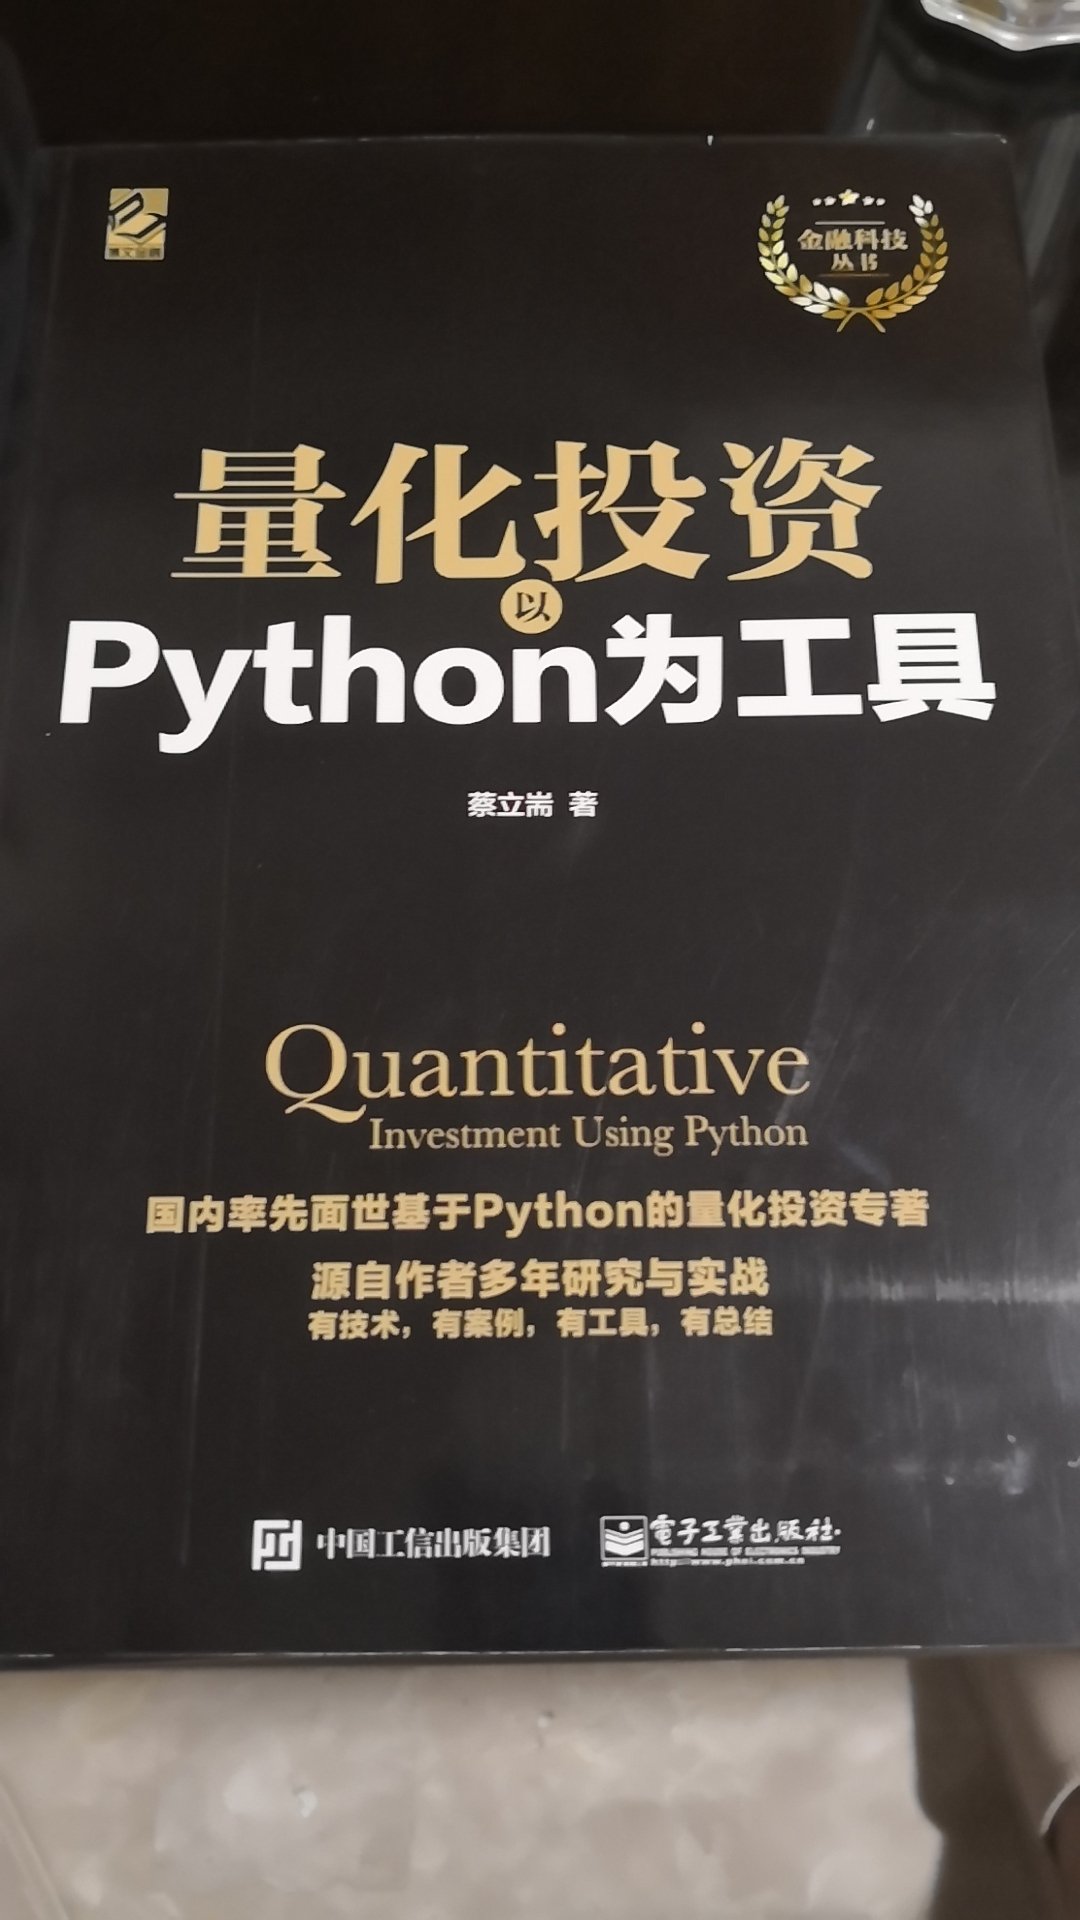 对python初学者很友好！编程小白从零开始毫无压力，期待用到后面高阶编程